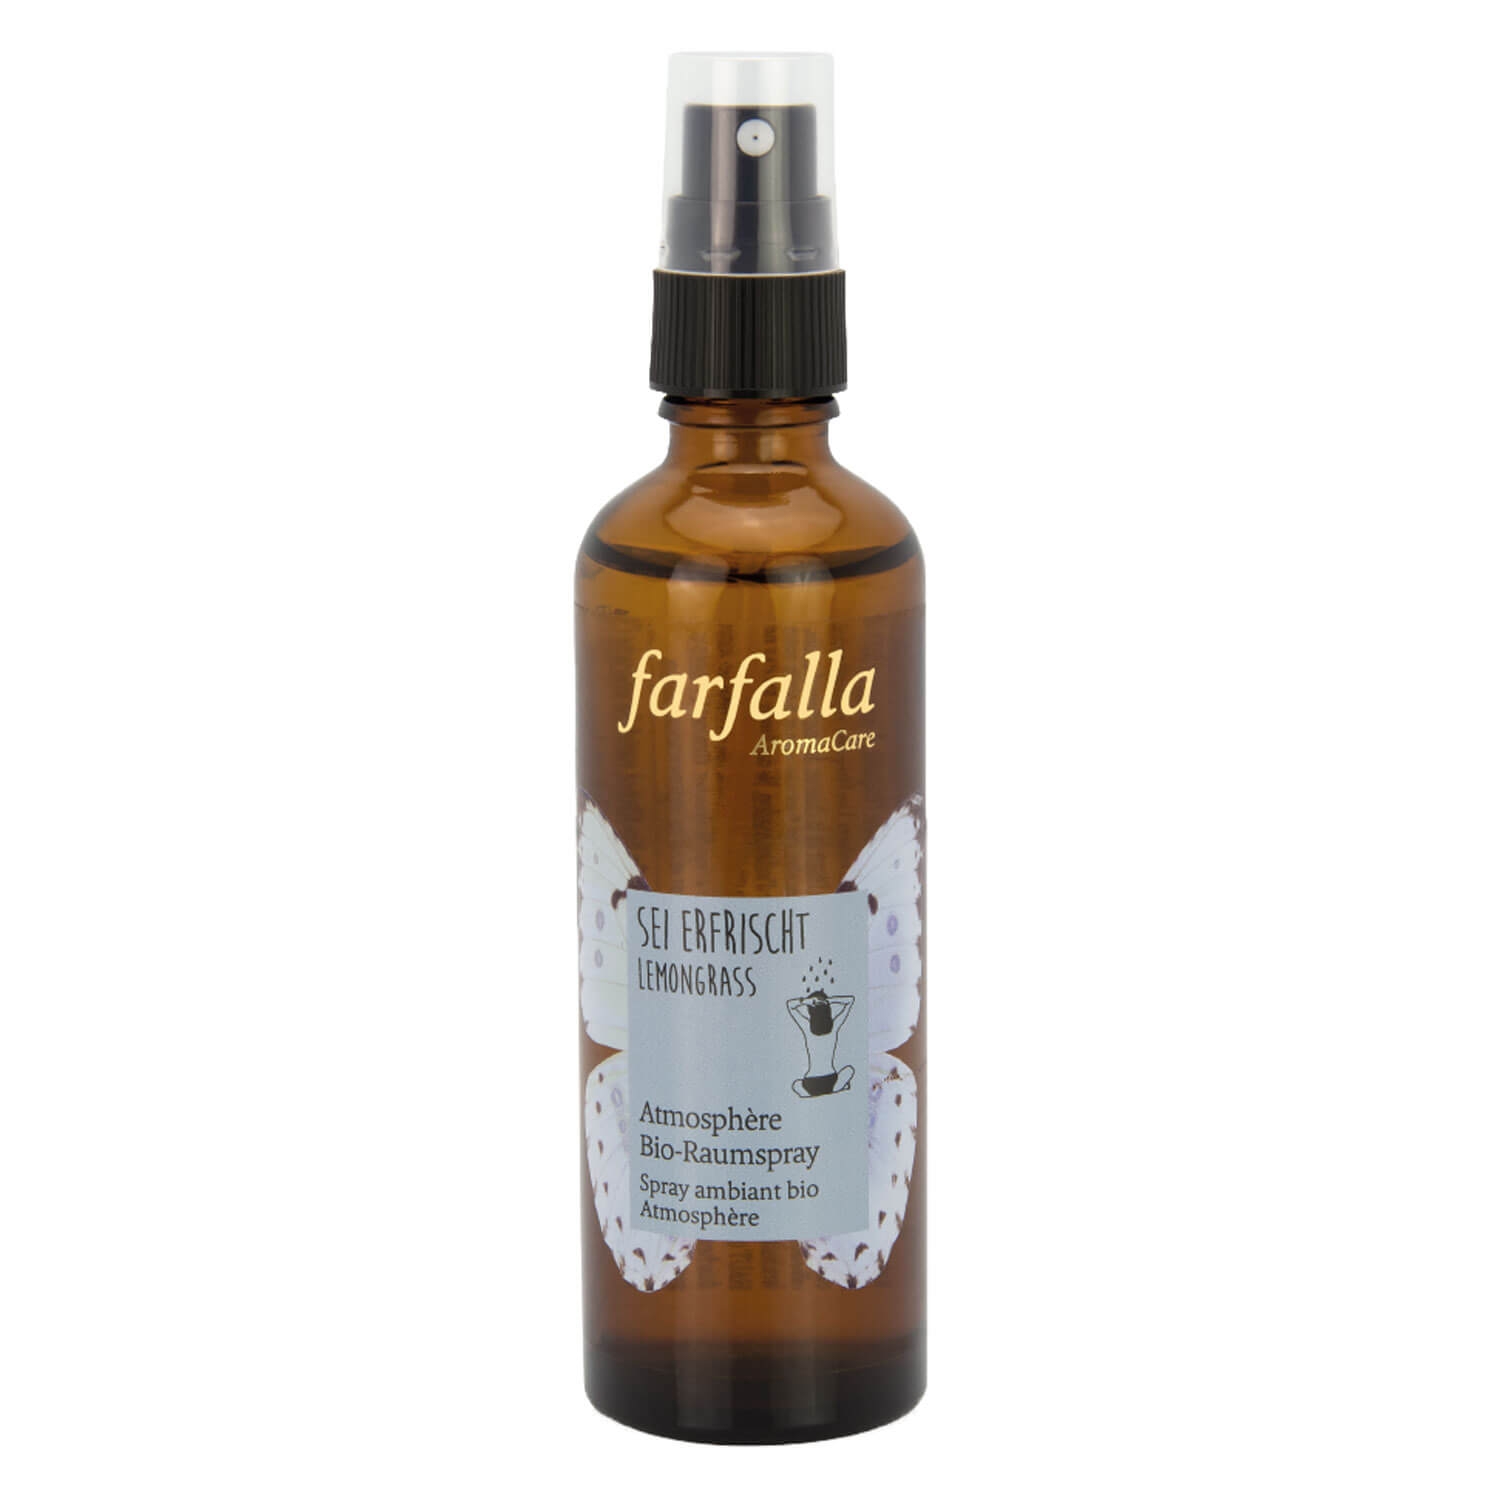 Product image from Farfalla Sei erfrischt - Lemongrass Atmosphère Bio-Raumspray